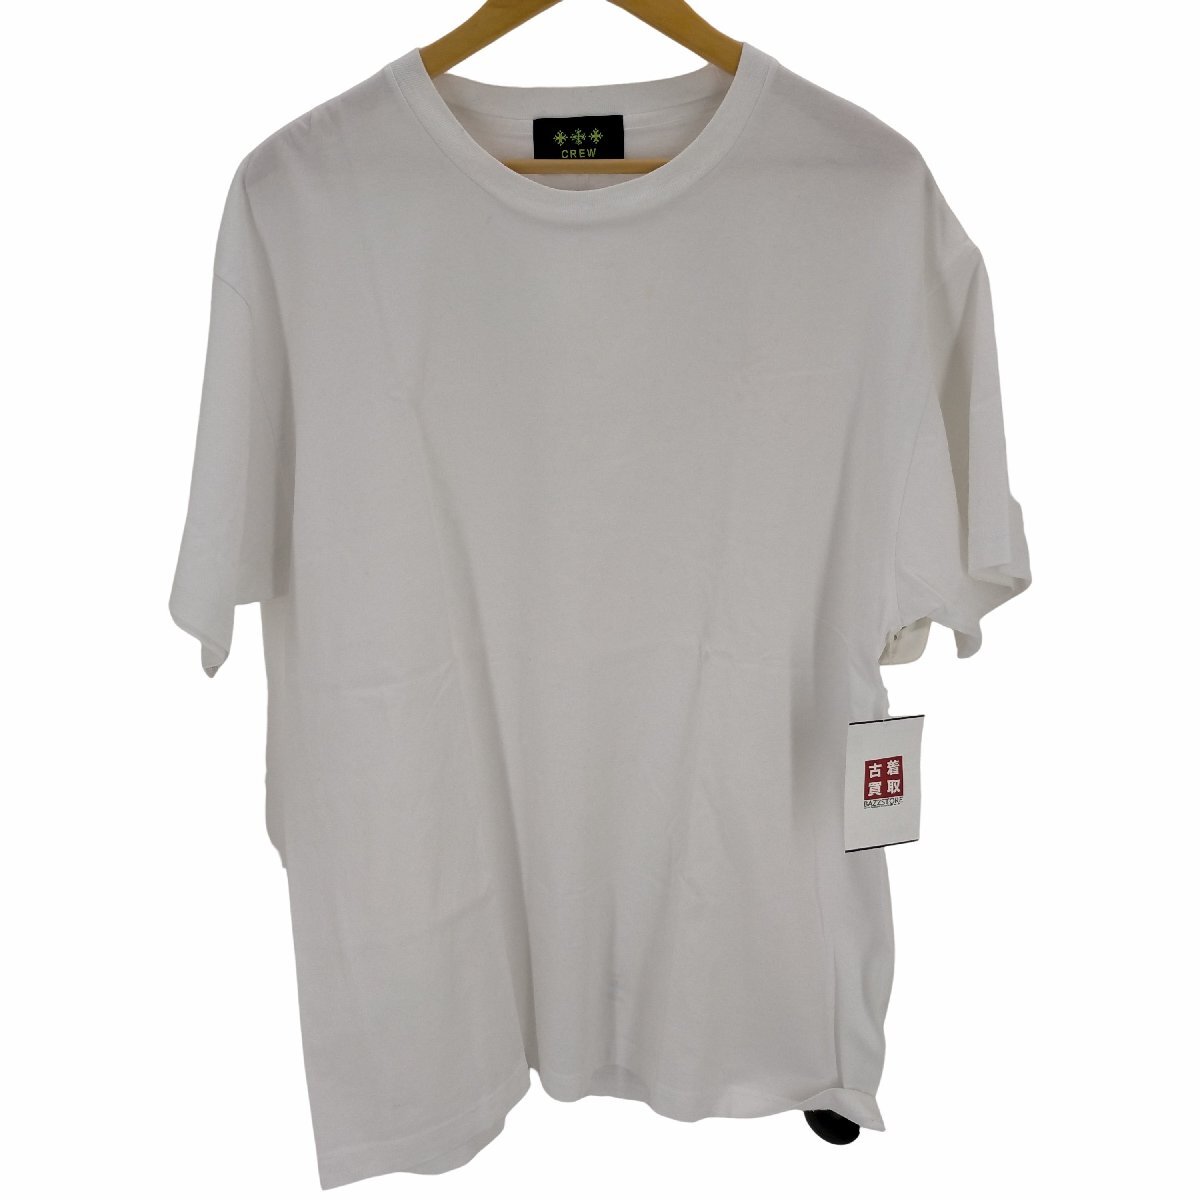 TATRAS(タトラス) CREW PITTACO Exclusive Tシャツ メンズ 03 中古 古着 0307_画像1